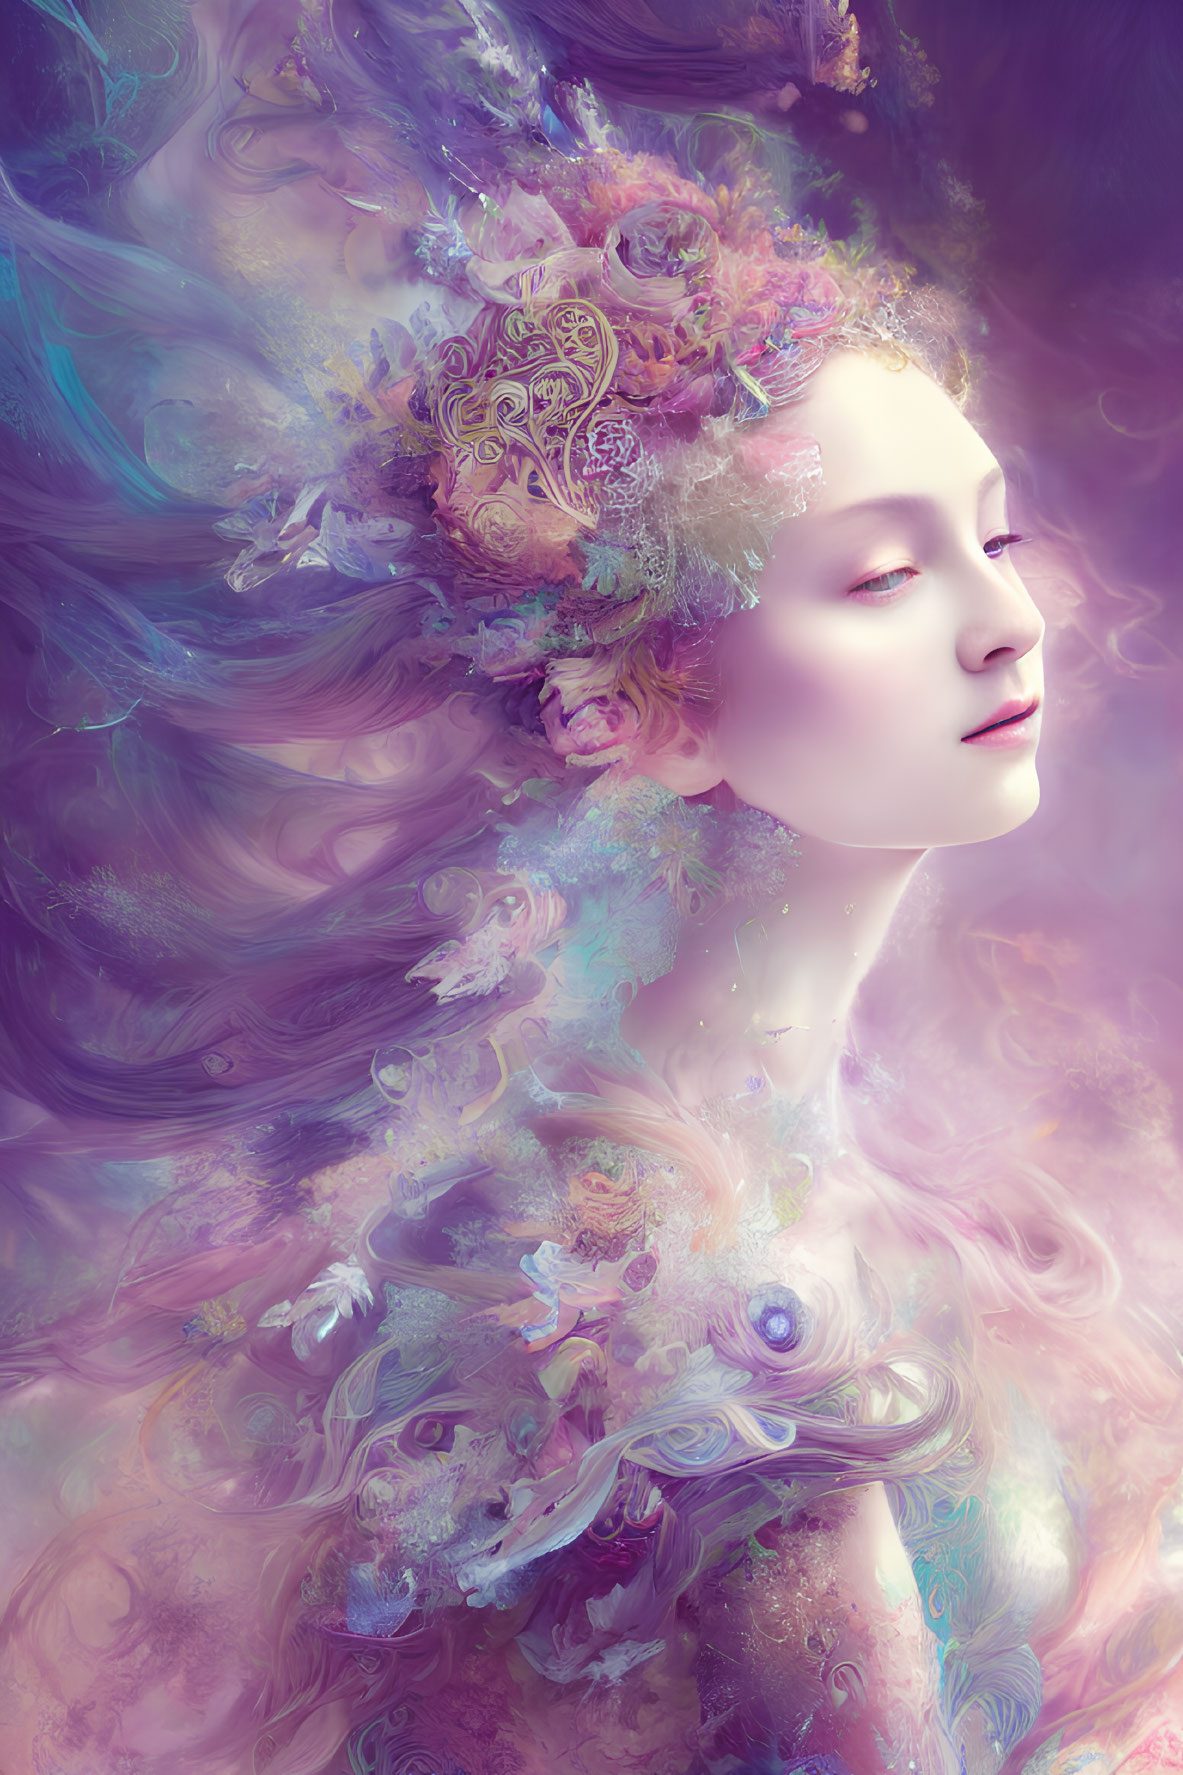 Pastel Floral Hair Woman in Dreamy Misty Swirl